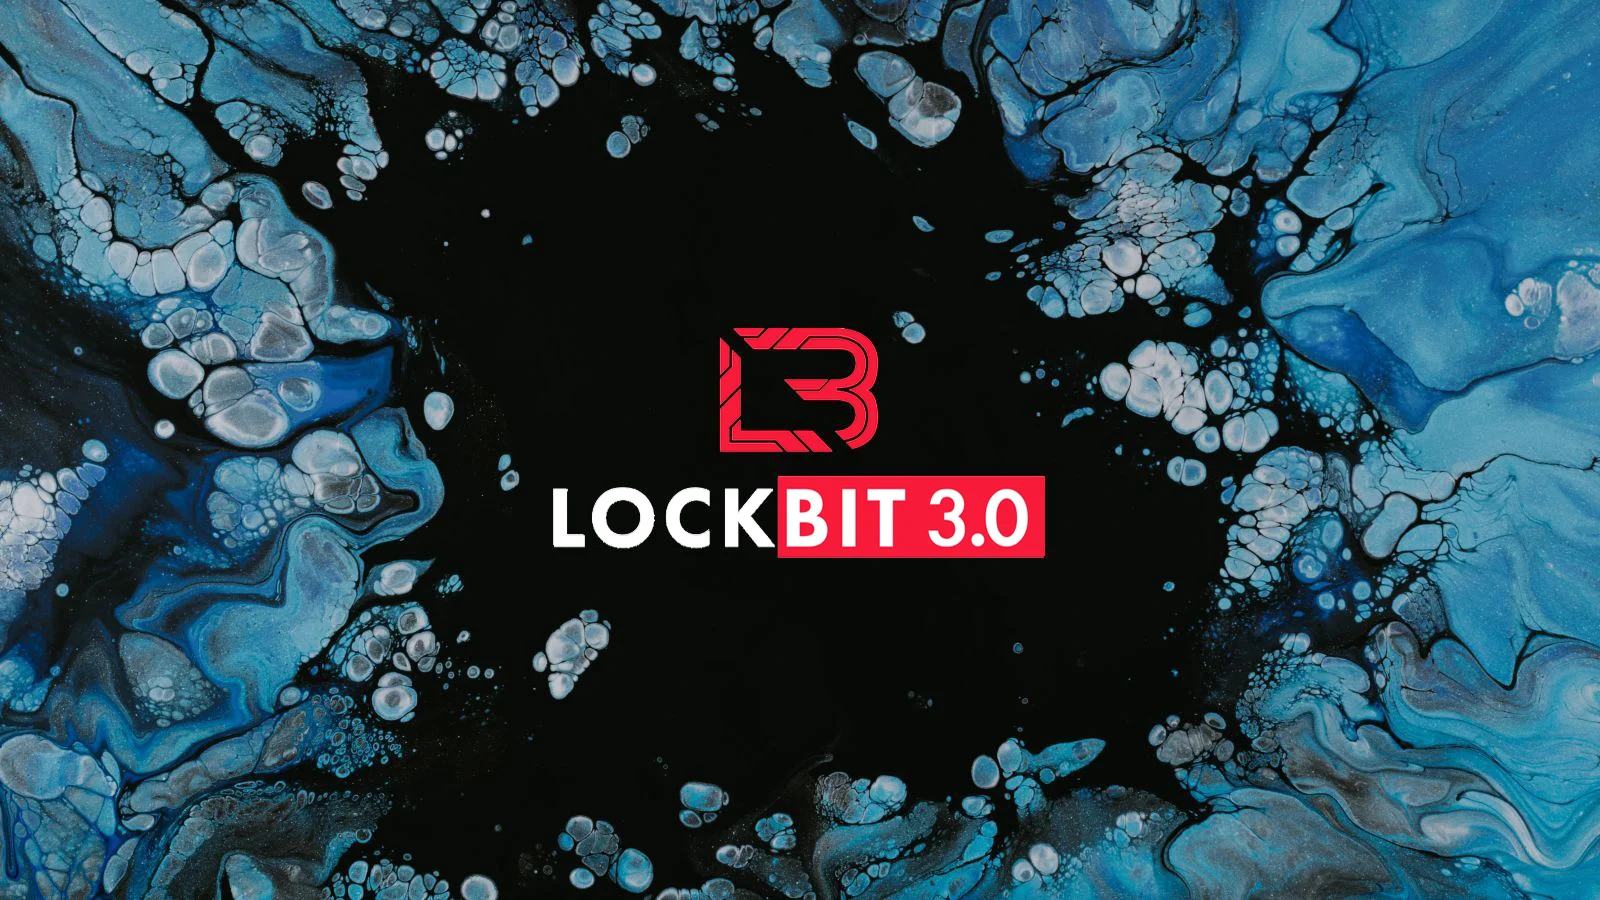 Ciberataque de LockBit en Sevilla: Una advertencia urgente